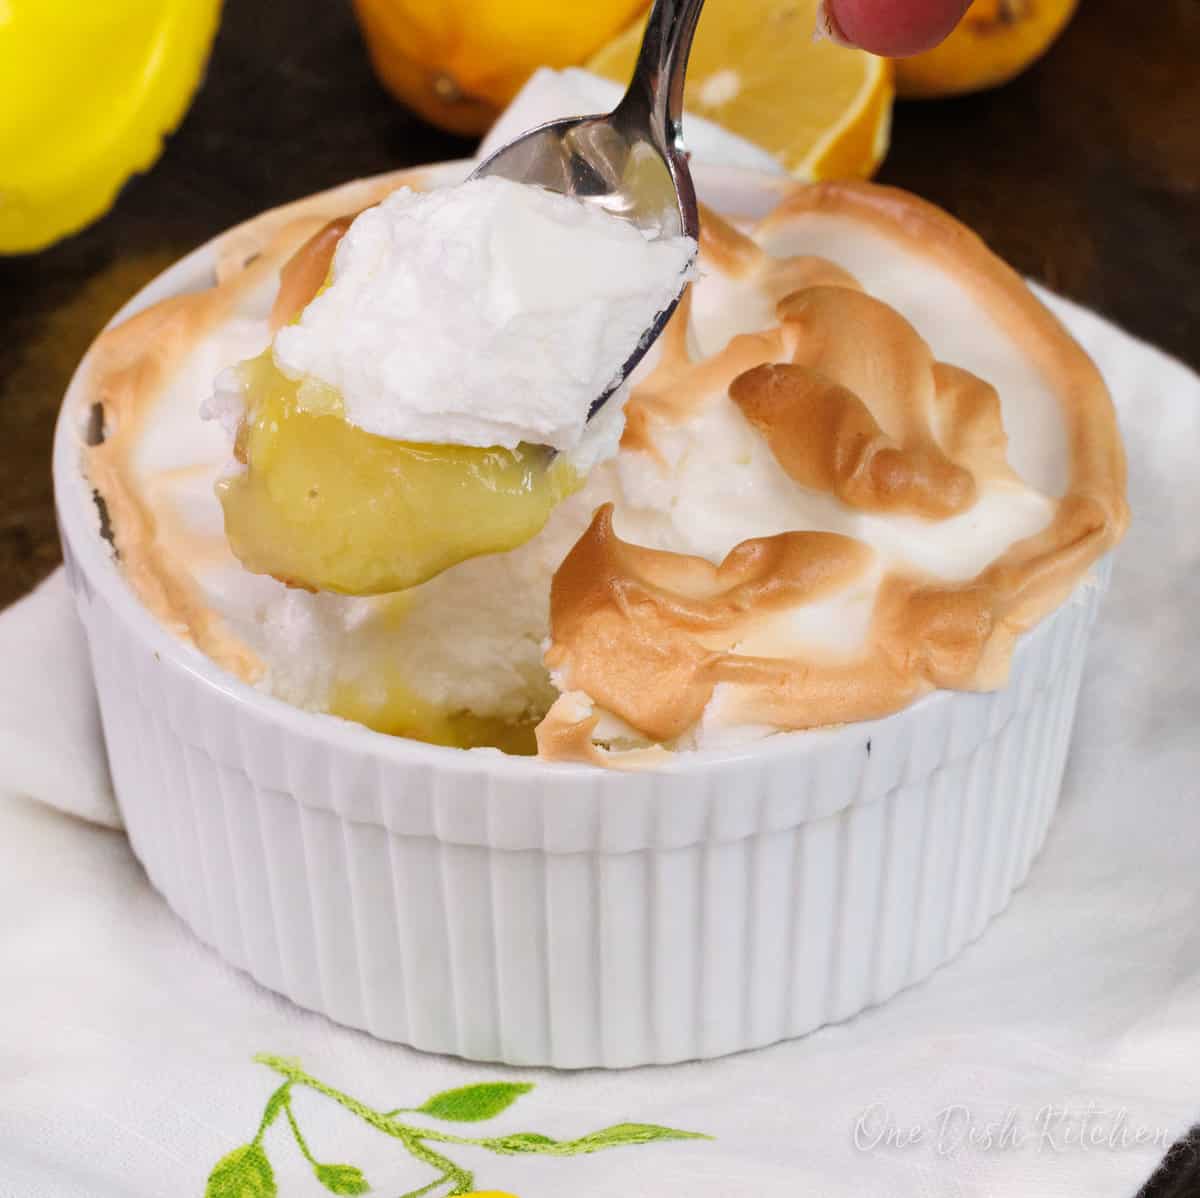 a spoon holding a bite of lemon meringue pie